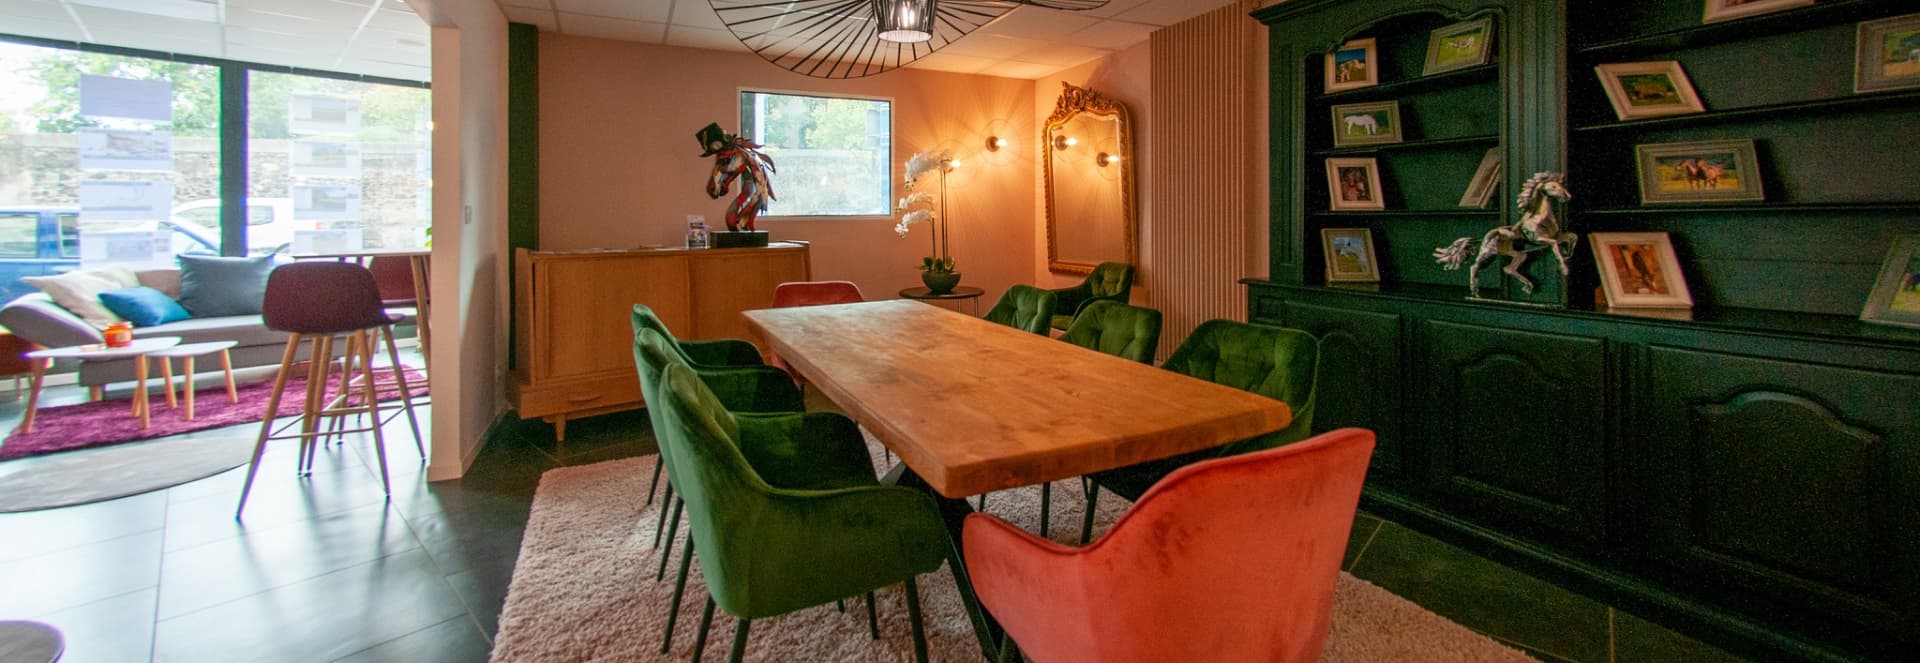 Joli salle à manger, avec une table en bois, de jolis sièges vert et orange mettant le meuble de derrière en valeur